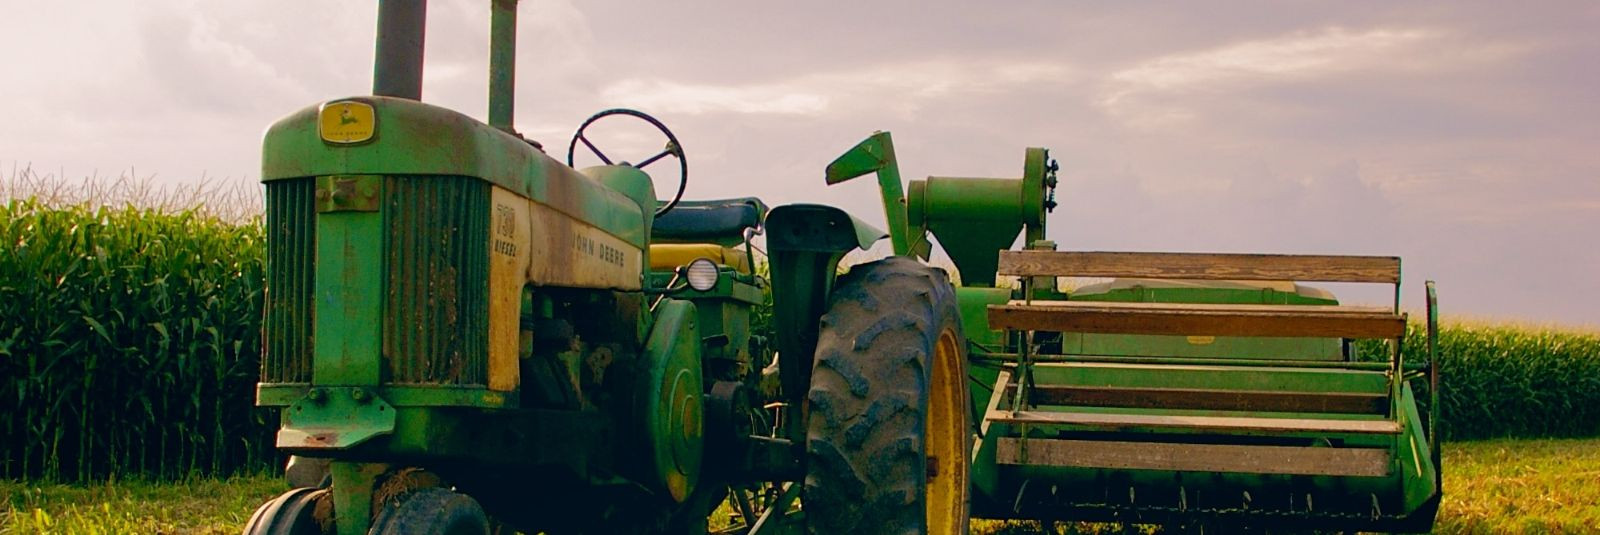 Põllumajandustehnika, eriti traktorid, on oluline osa igapäevasest põllumajandustegevusest. Traktorid aitavad tagada sujuva ja tõhusa põllumajandustöö ning nend